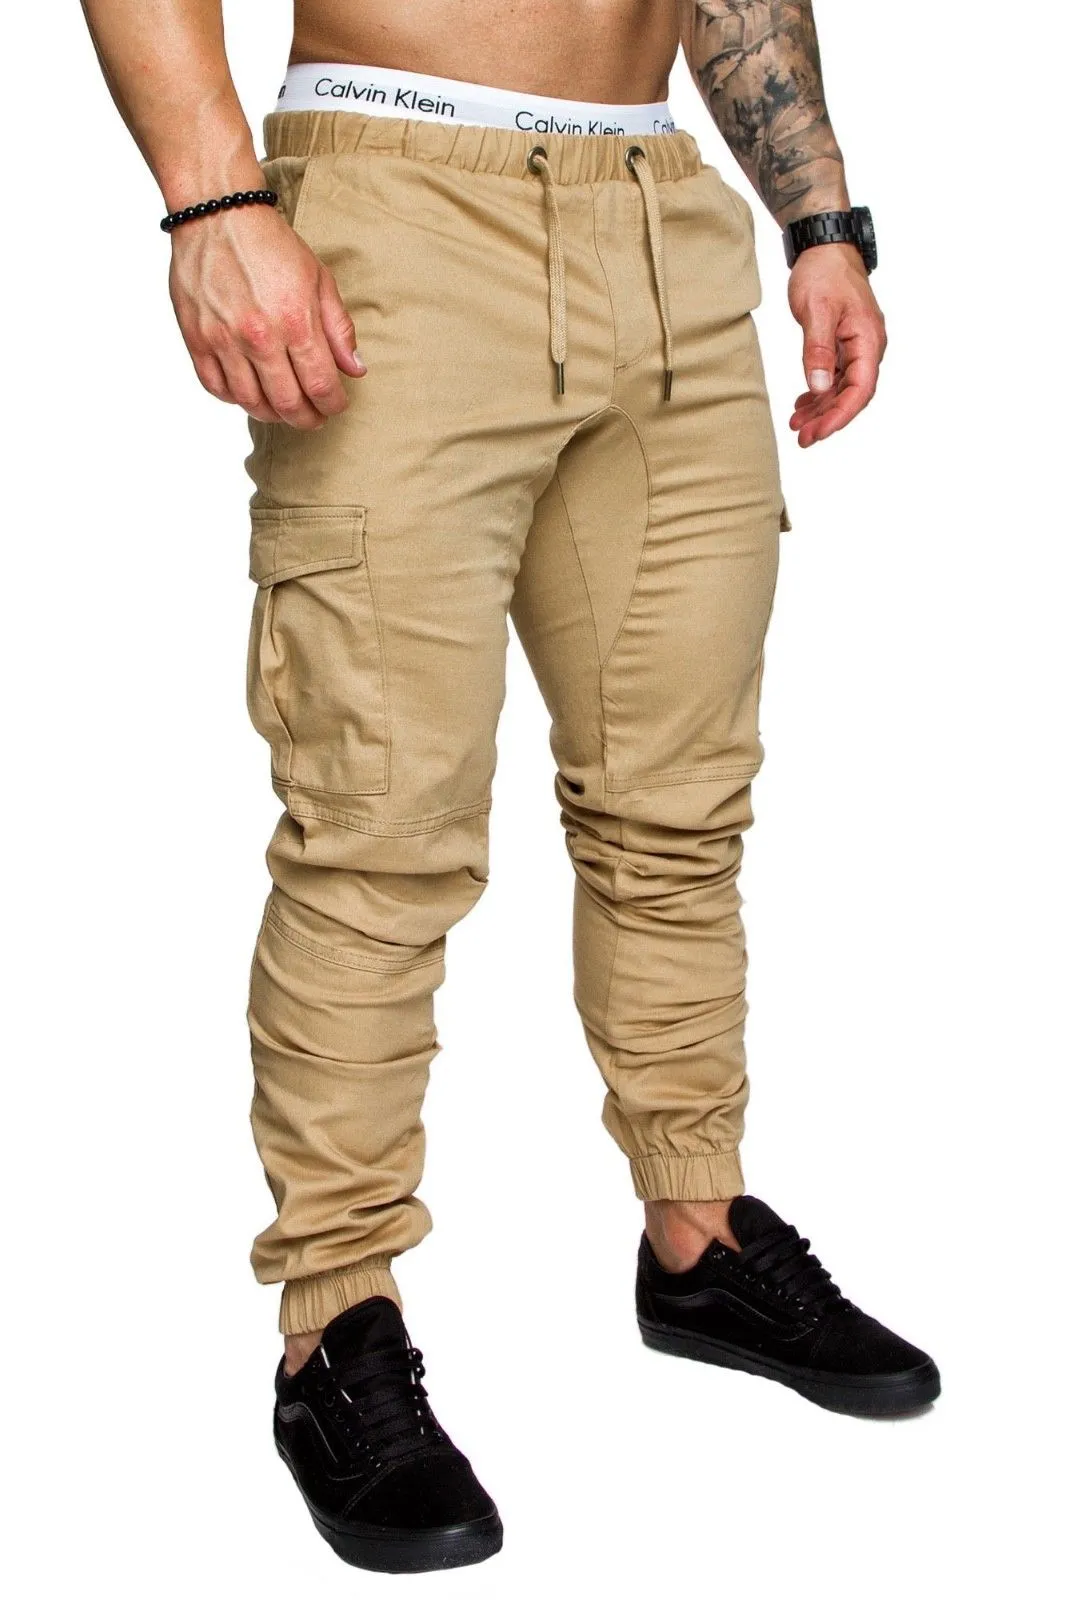 mens joggers male HIPHOP Low Drop crotch FOR Jeans hip hop sarouel dance baggy trouser pantalon Homme harem pants men2697